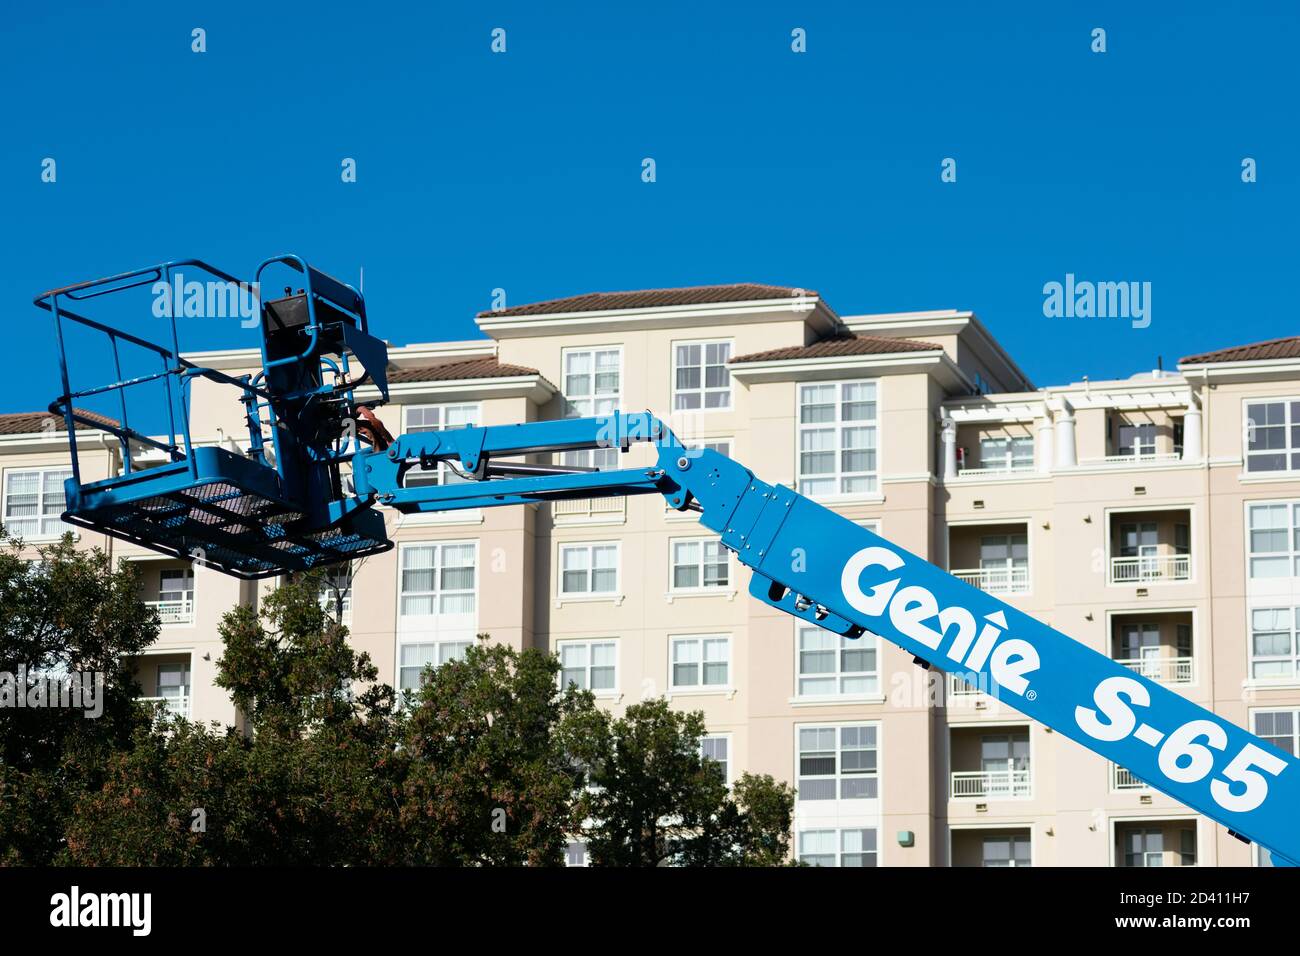 Relevage de la flèche télescopique Genie. Complexe d'appartements moderne à plusieurs étages en arrière-plan - San Jose, Californie, États-Unis - 2020 Banque D'Images